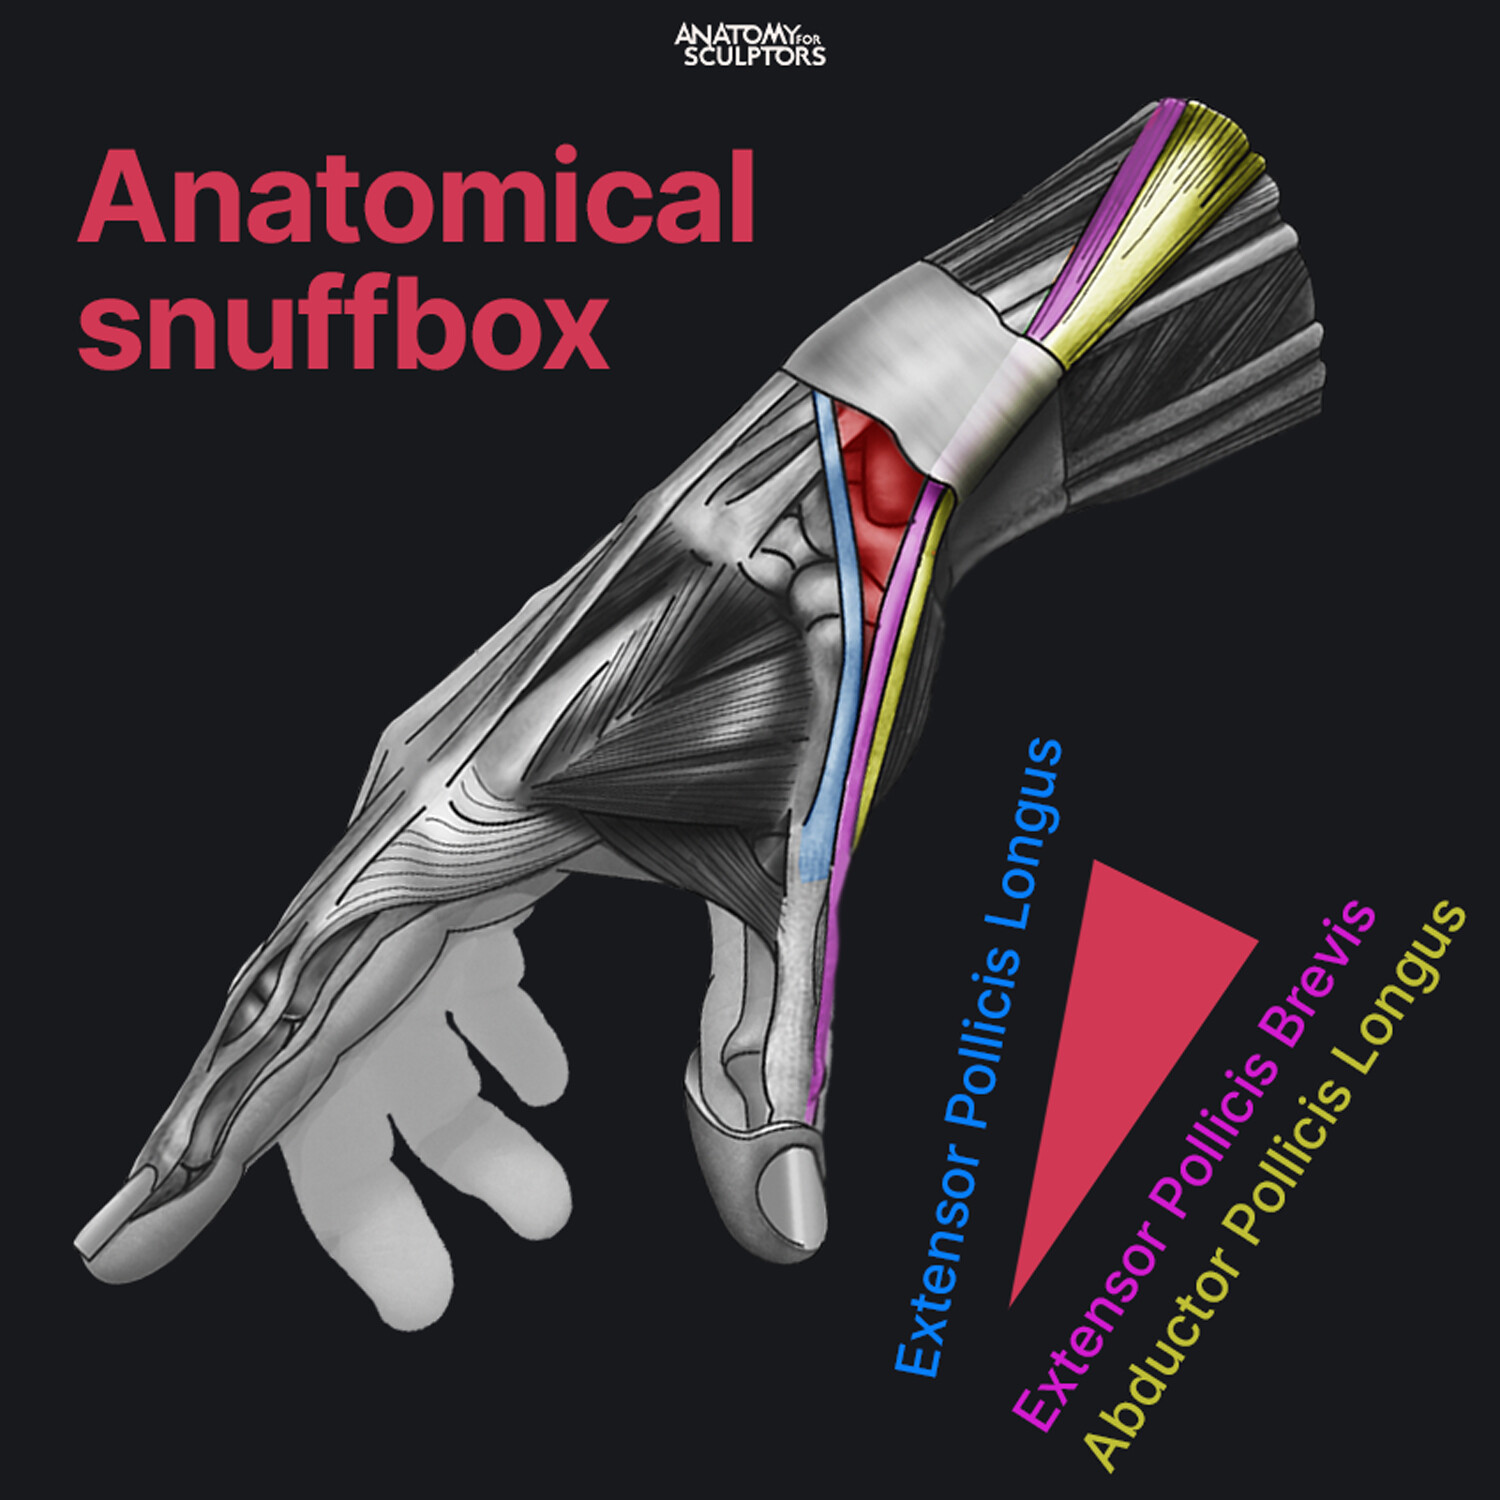 anatomic snuffbox, anatomical snuffbox